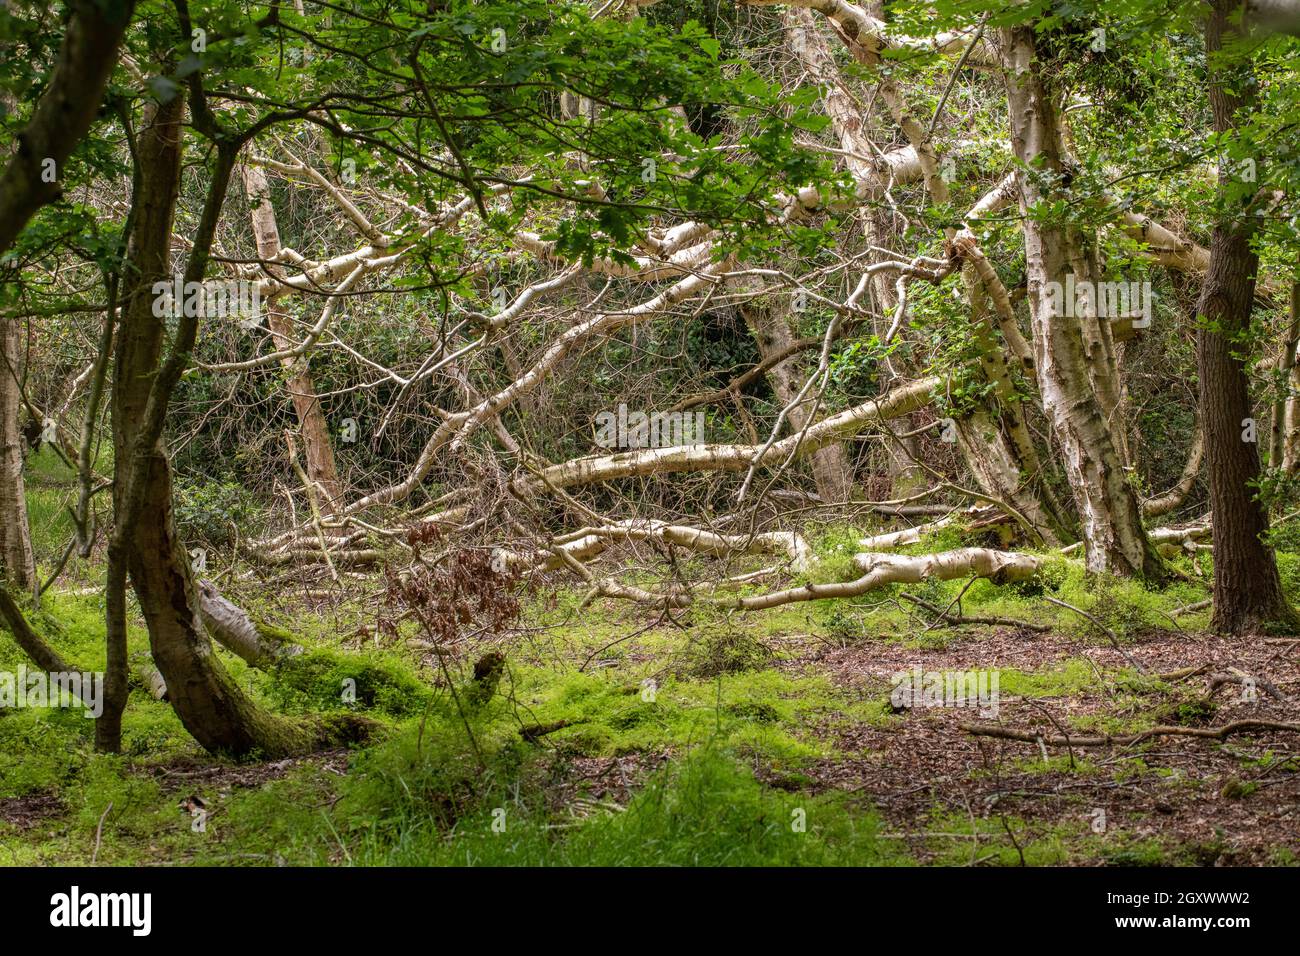 Natürliche Abfolge von Baumarten in feuchten Feuchtgebieten. Pionierart Birke (Betula pubescens), die der Eiche (Quercus robur) Platz macht. Bodenflora Stockfoto